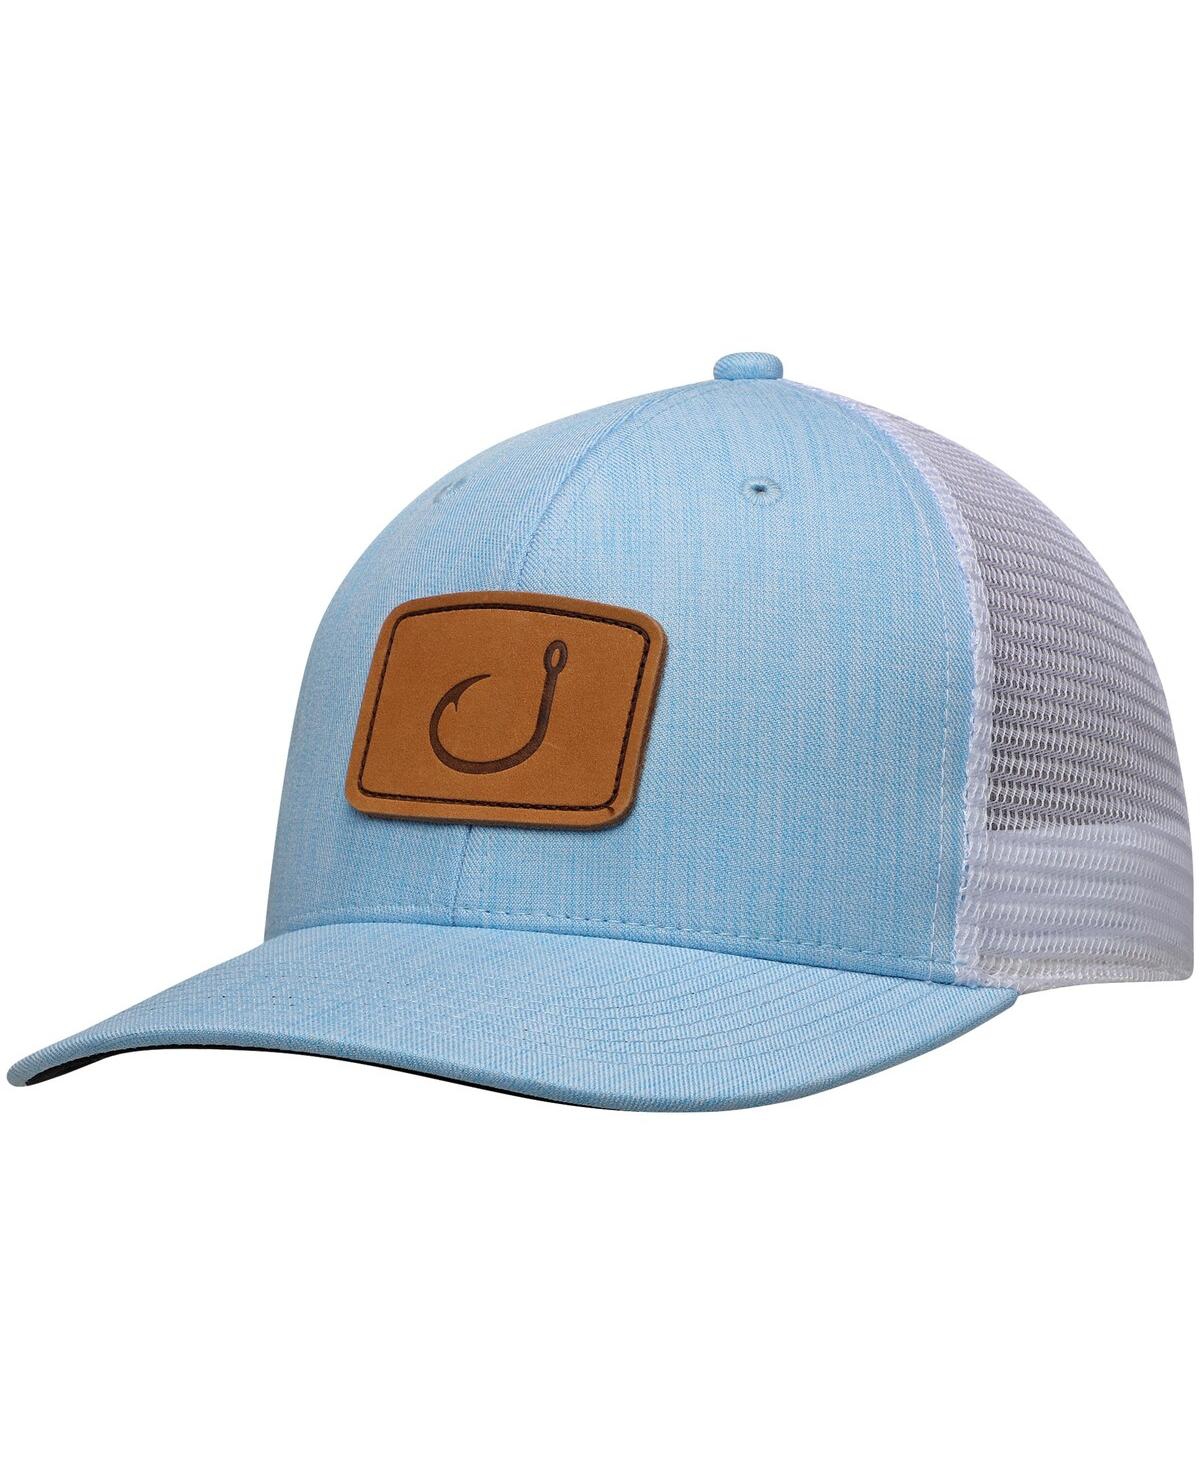 Avid Men's  Light Blue Lay Day Trucker Snapback Adjustable Hat